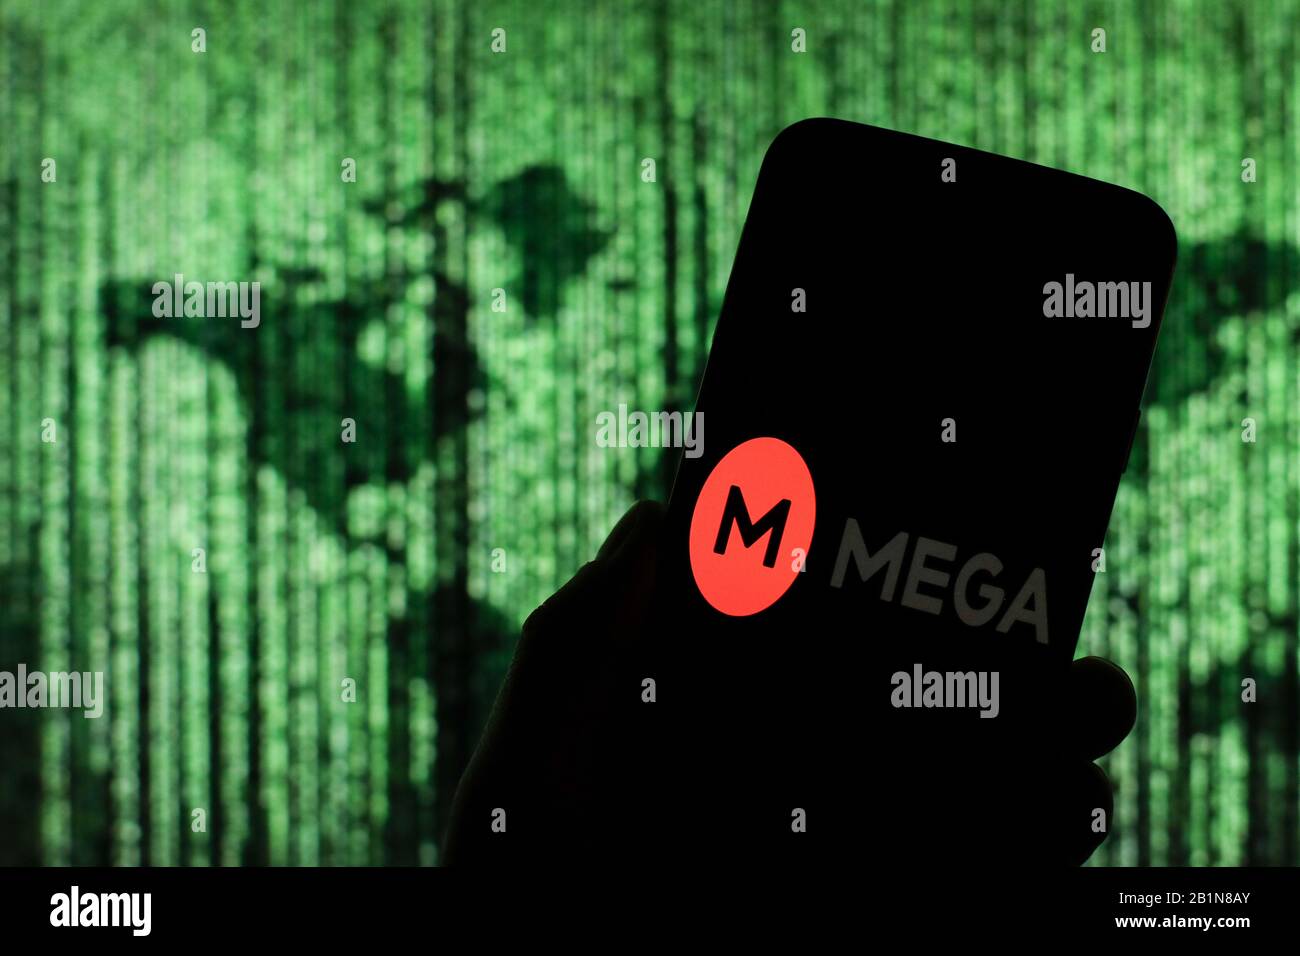 Mega-Upload-Logo des Cloud-Unternehmens wird auf dem Smartphone-Bildschirm mit einer Matrix-ähnlichen Weltkarte angezeigt, die im Hintergrund verschwommen zu sehen ist Stockfoto